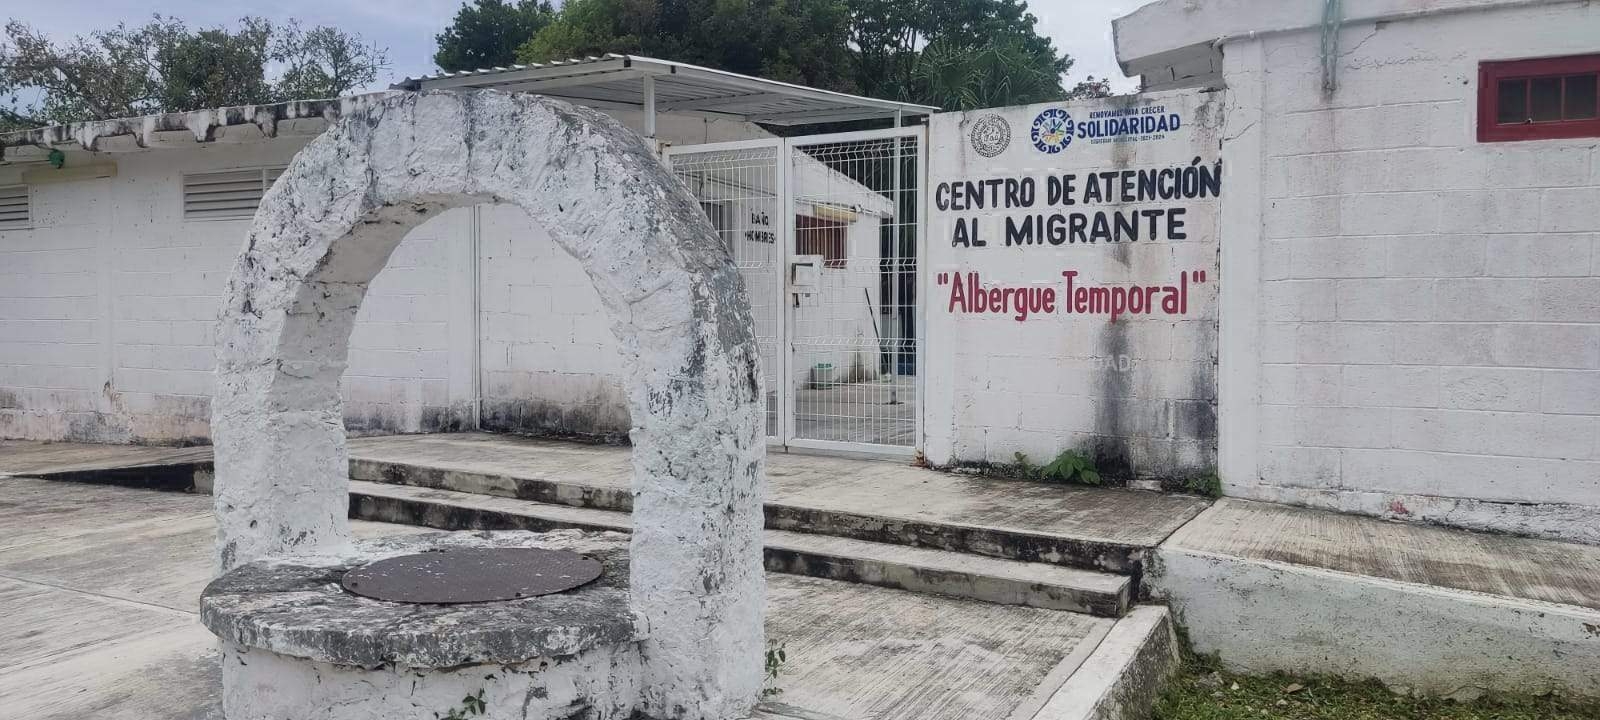 Migrantes, sin apoyo en Playa del Carmen por vacaciones de empleados del albergue temporal